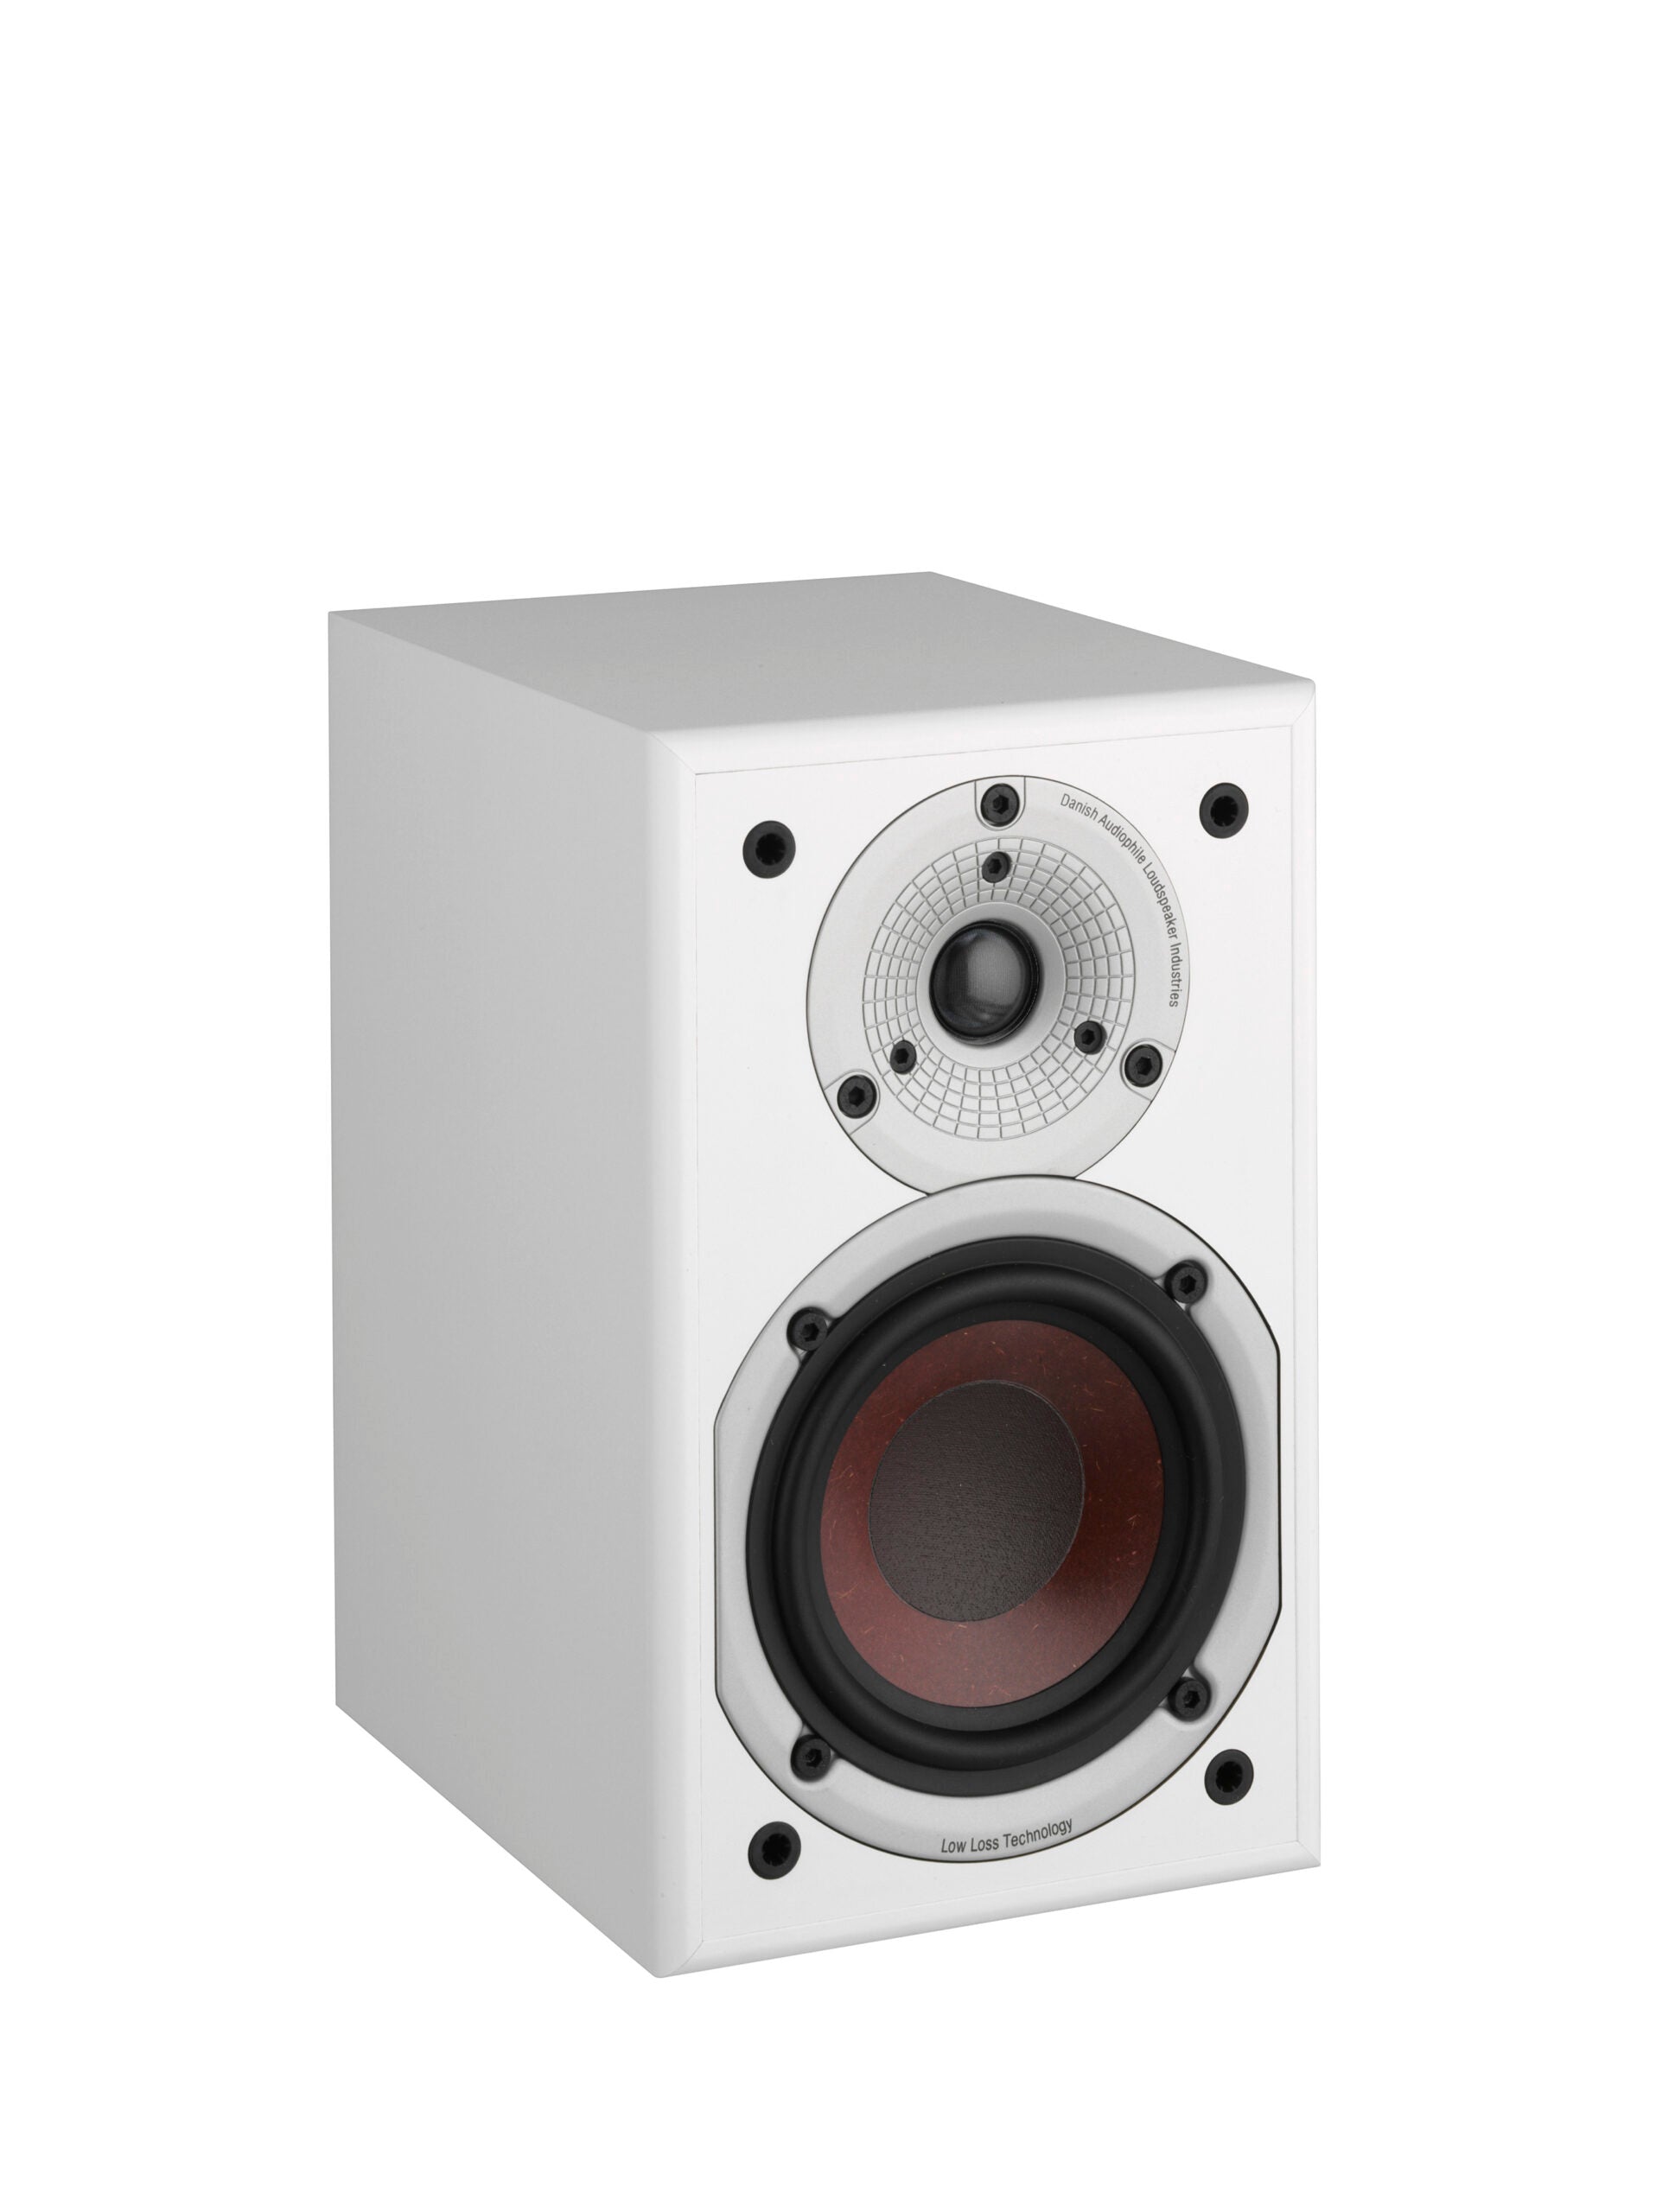 DALI Spektor 2 Compact Speakers - Black Ash (Pair)